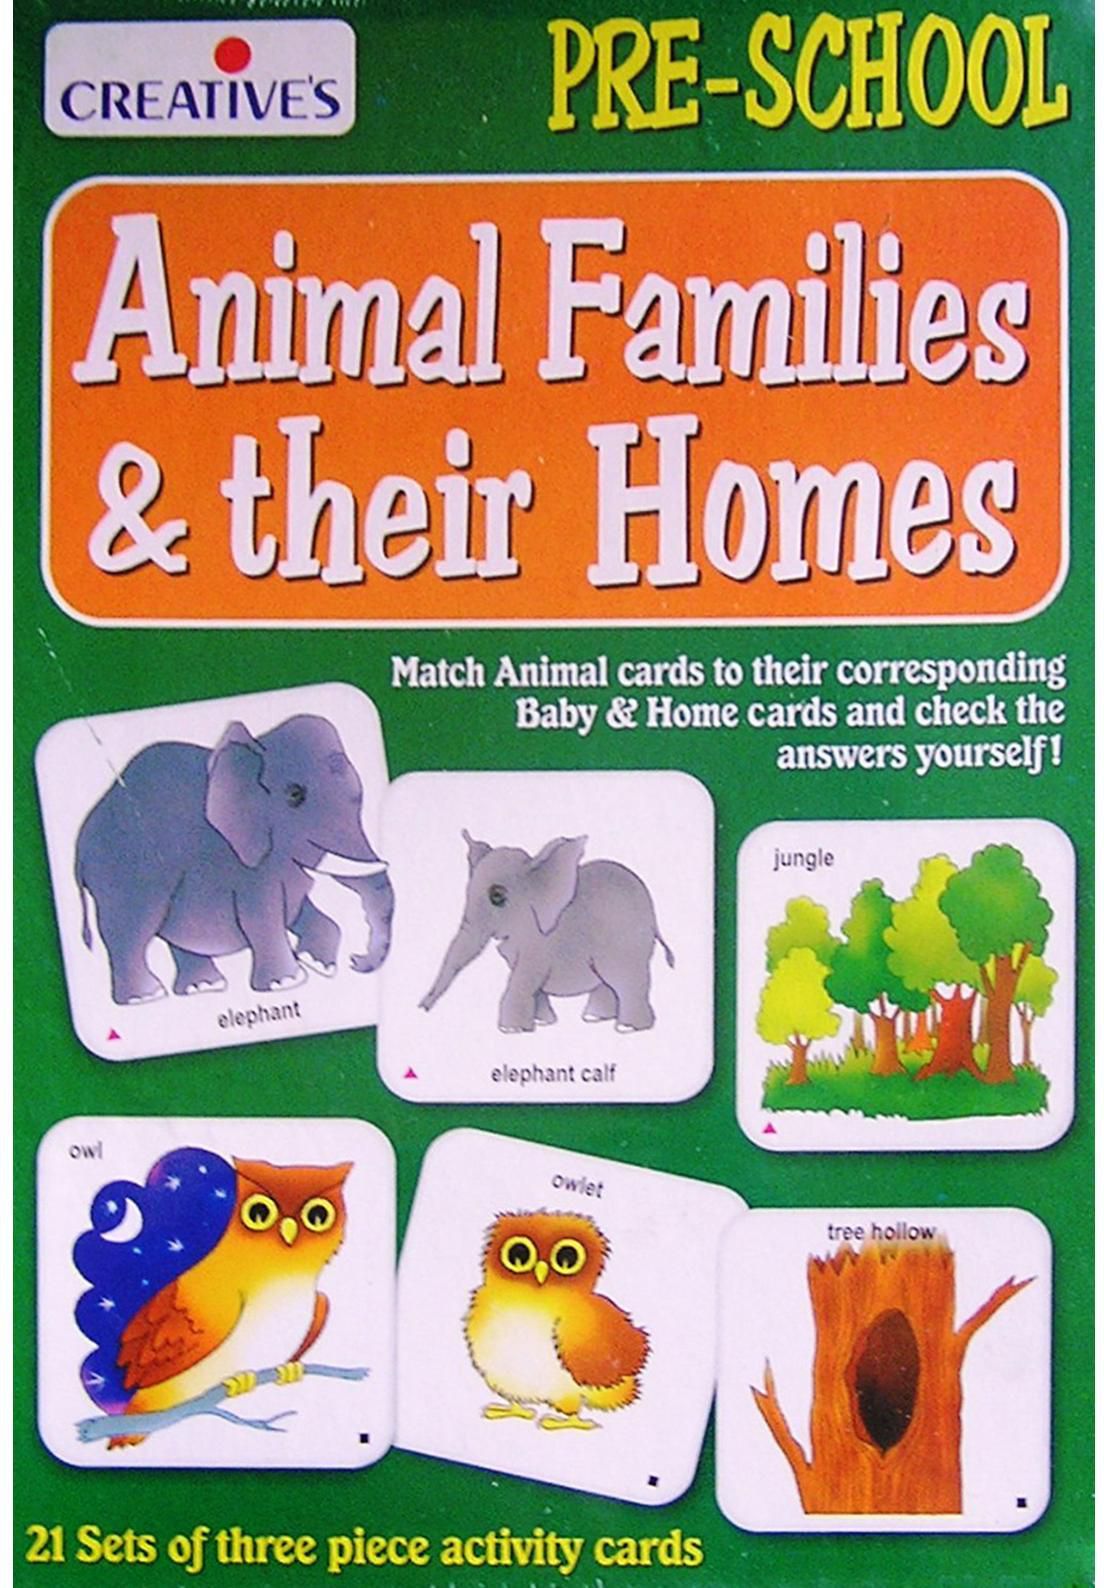 كرياتيفز لما قبل المدرسة Animal Families & Their Homes مجموعة أنشطة تعليمية